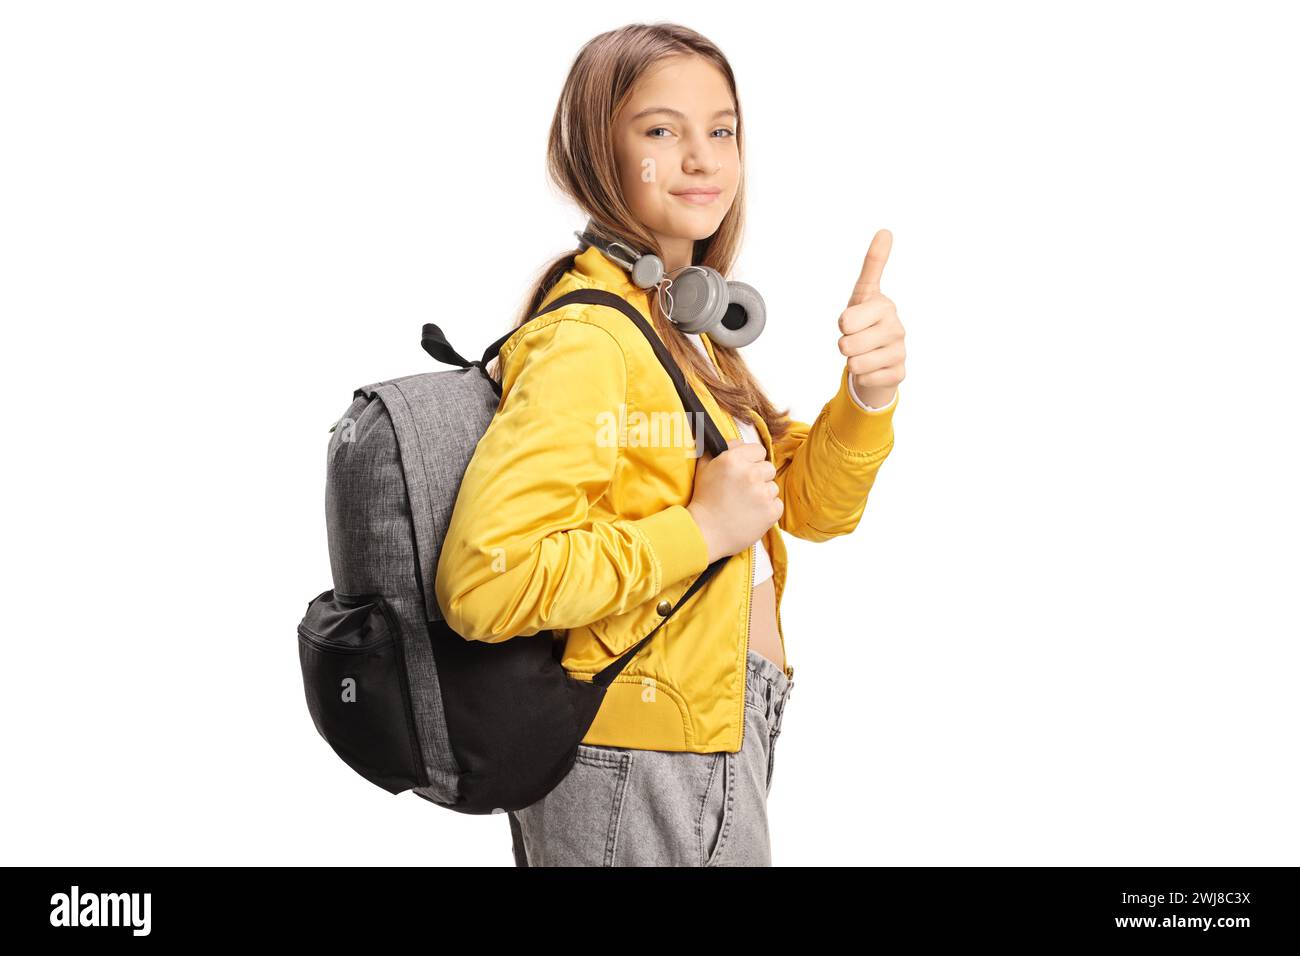 Studentessa adolescente con cuffie e zaino che gestiscono i pollici isolata su sfondo bianco Foto Stock